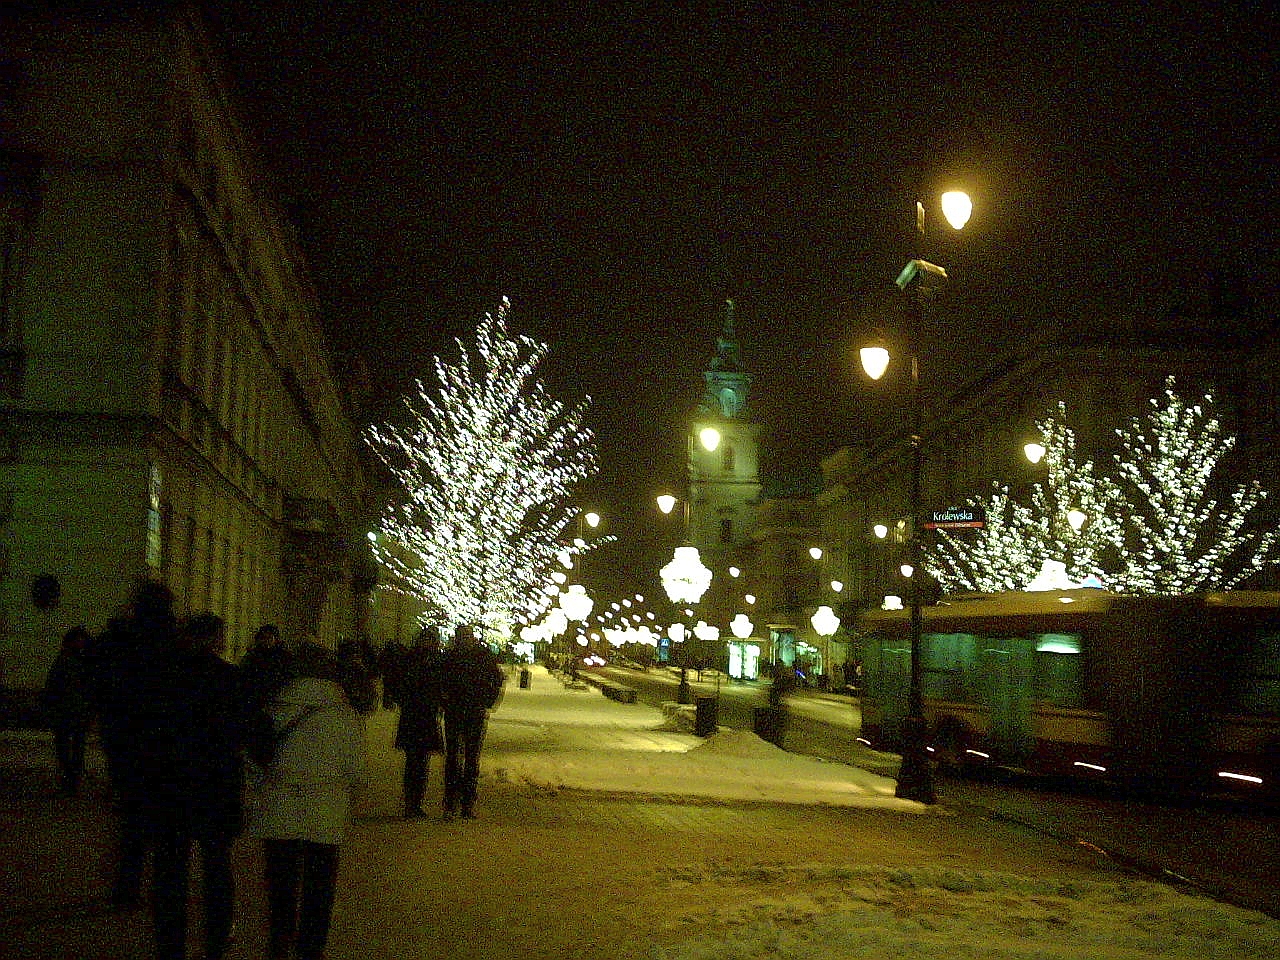 A snowy Night in Warsaw